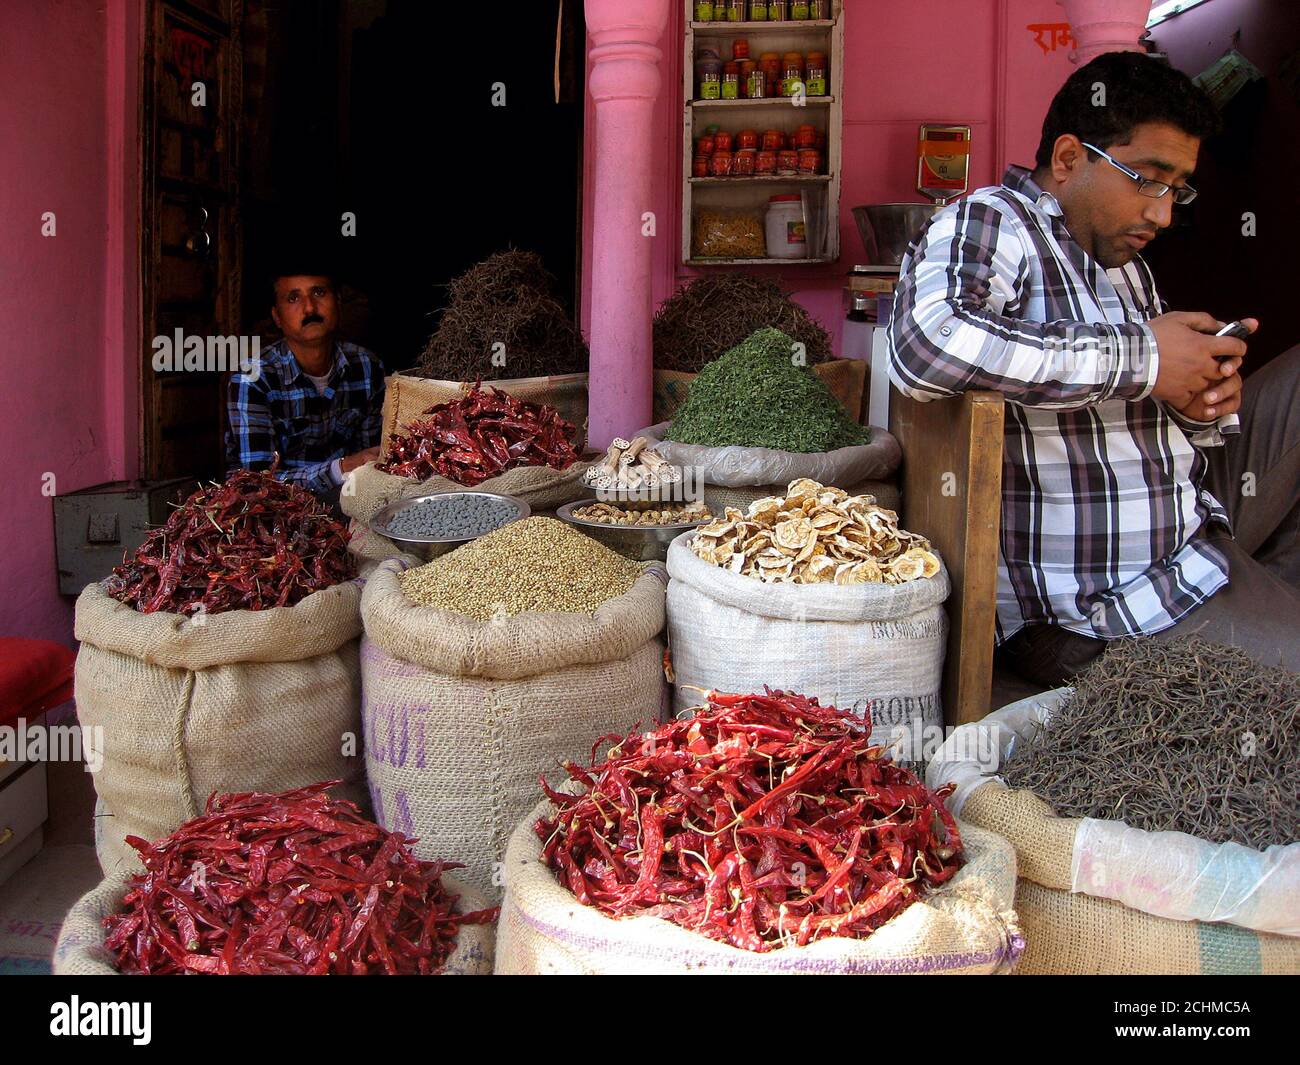 Lebensmittelgeschäft in einer zentralen Straße von Bikaner, Rajasthan. Zwei Verkäufer sind in der Nähe von großen Tüten mit indischem Essen sichtbar. Stockfoto